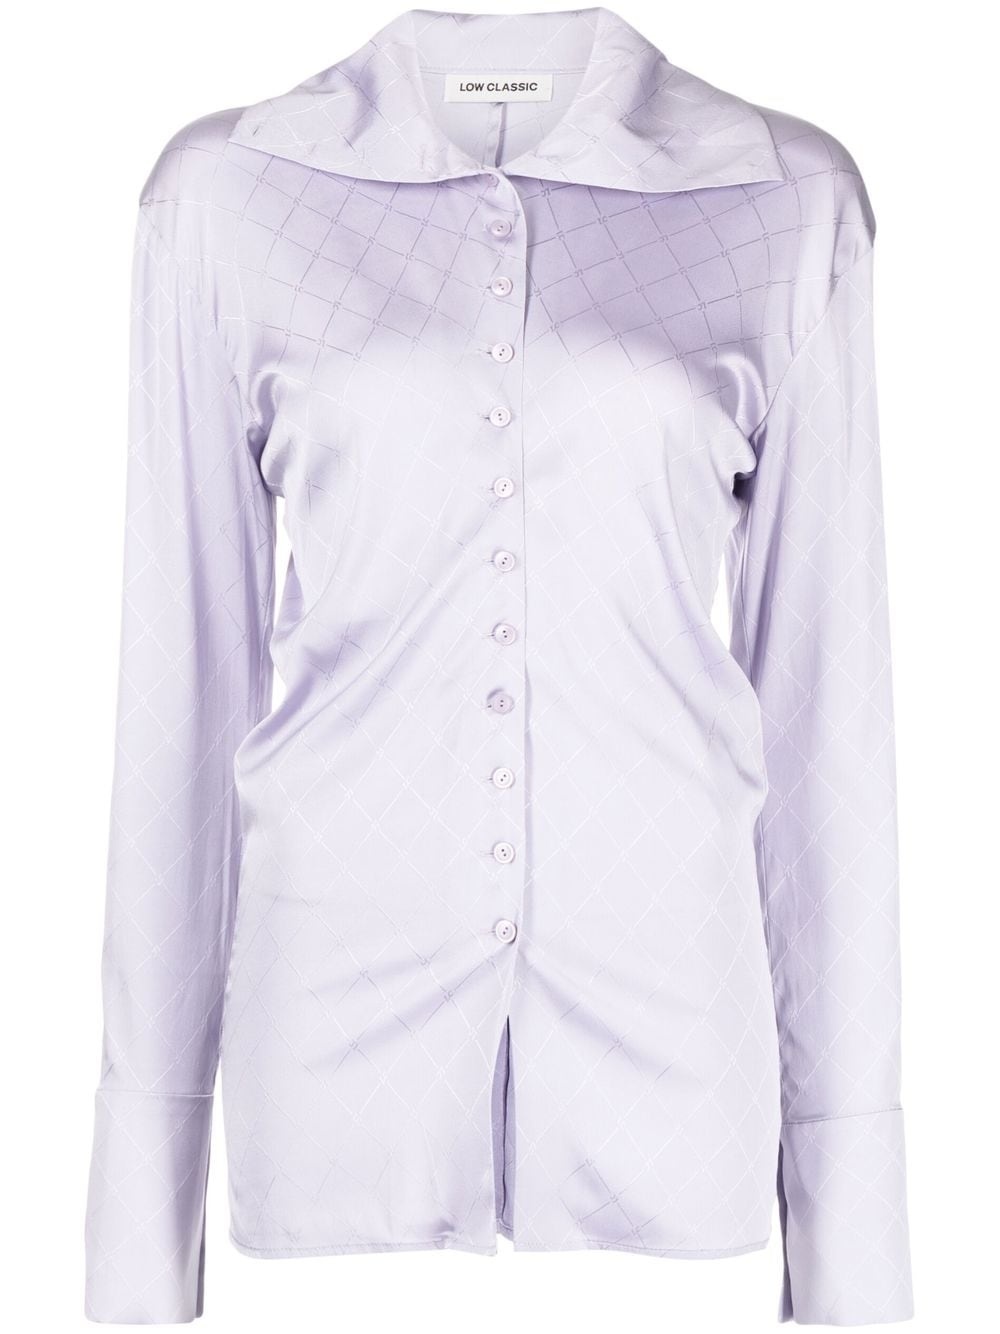 Sailor button point blouse - 1